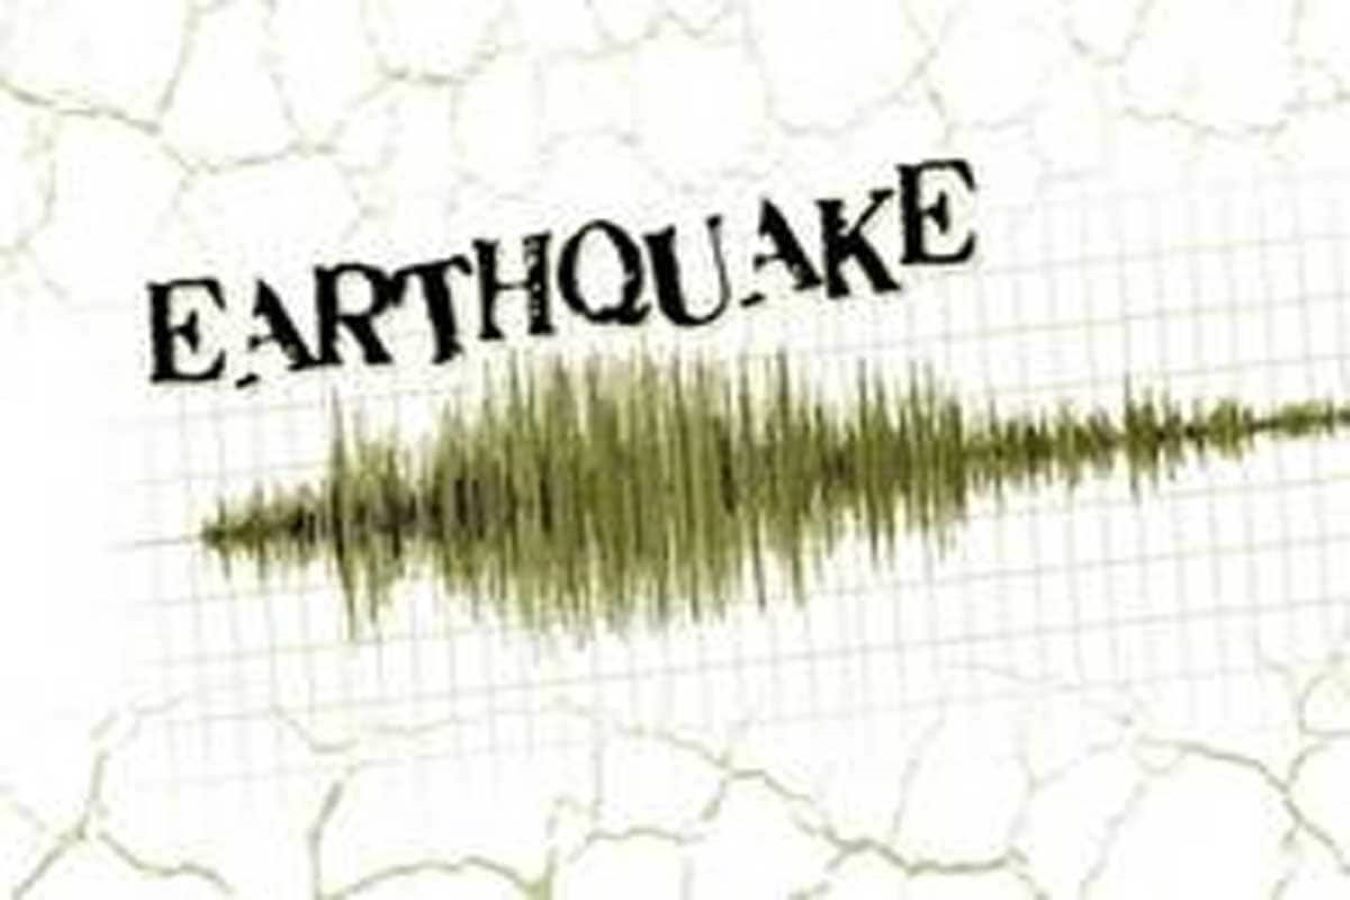 زلزال بقوة 5 درجات يضرب إندونيسيا